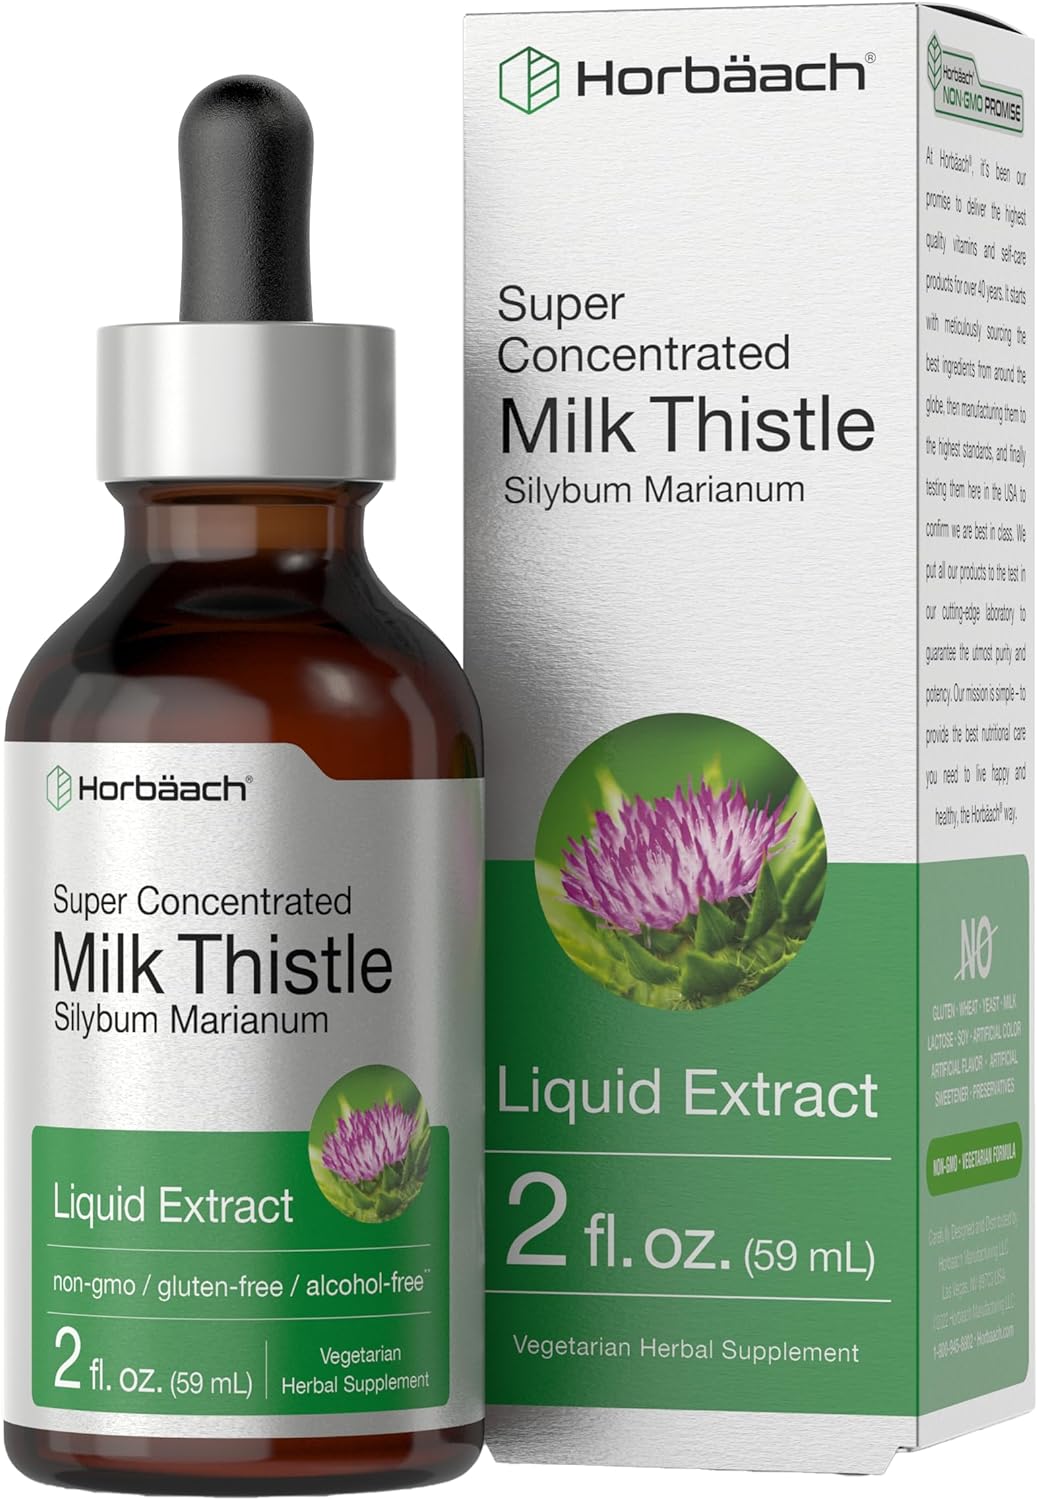 Horbach Milk Thistle Extract Liquid | 2 fl oz | Alcohol Free | Vegetarian, Non-GMO & Gluten Free Supplement